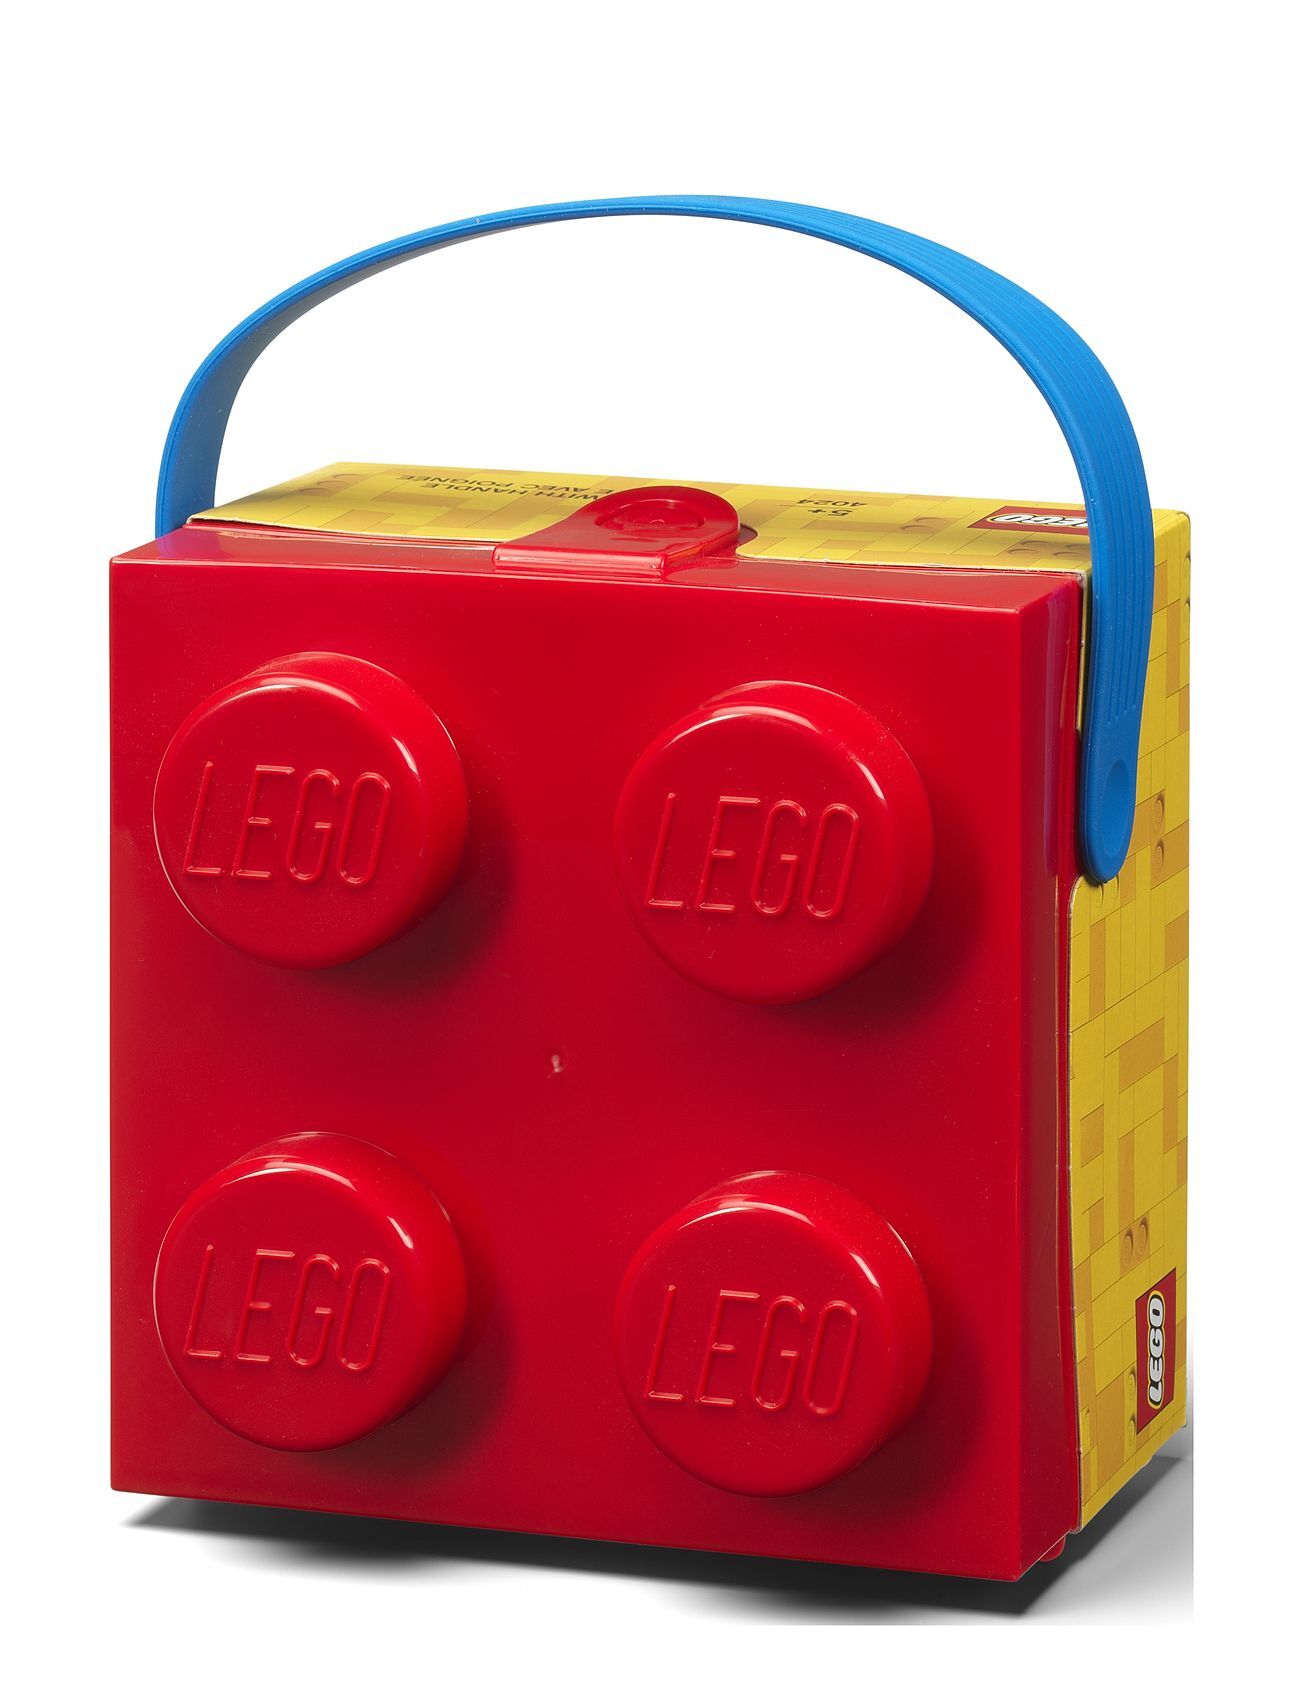 Lego Box W. Handle - Classic Home Kids Decor Storage Rød LEGO STORAGE